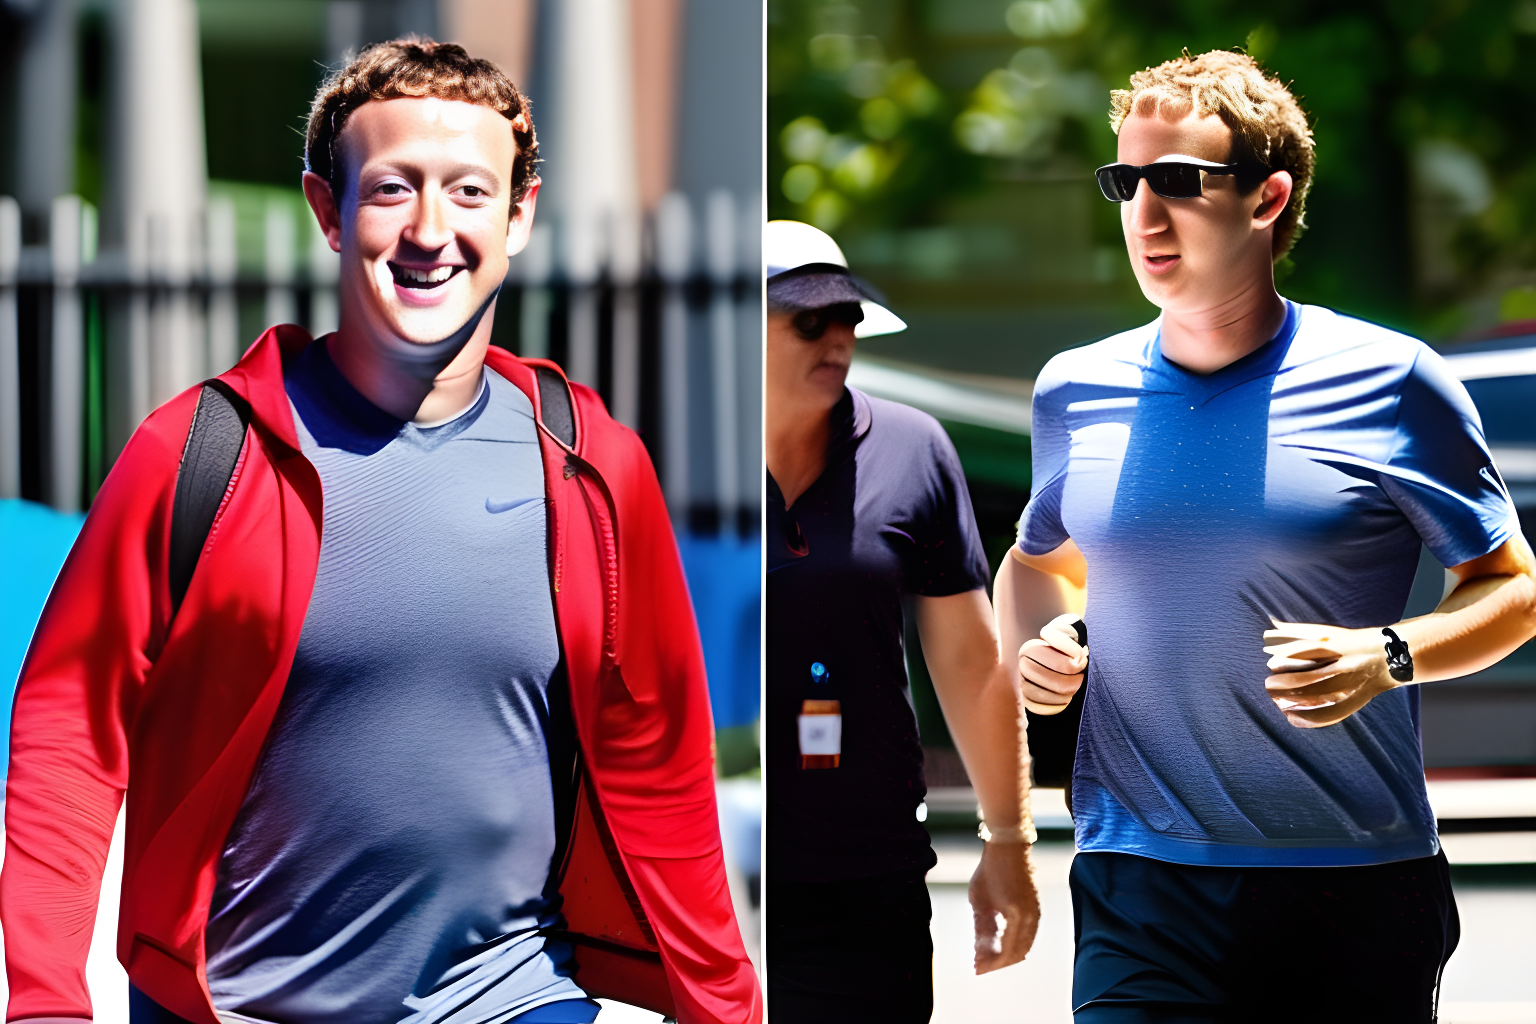 Mark zuckerberg sweating through his shirt